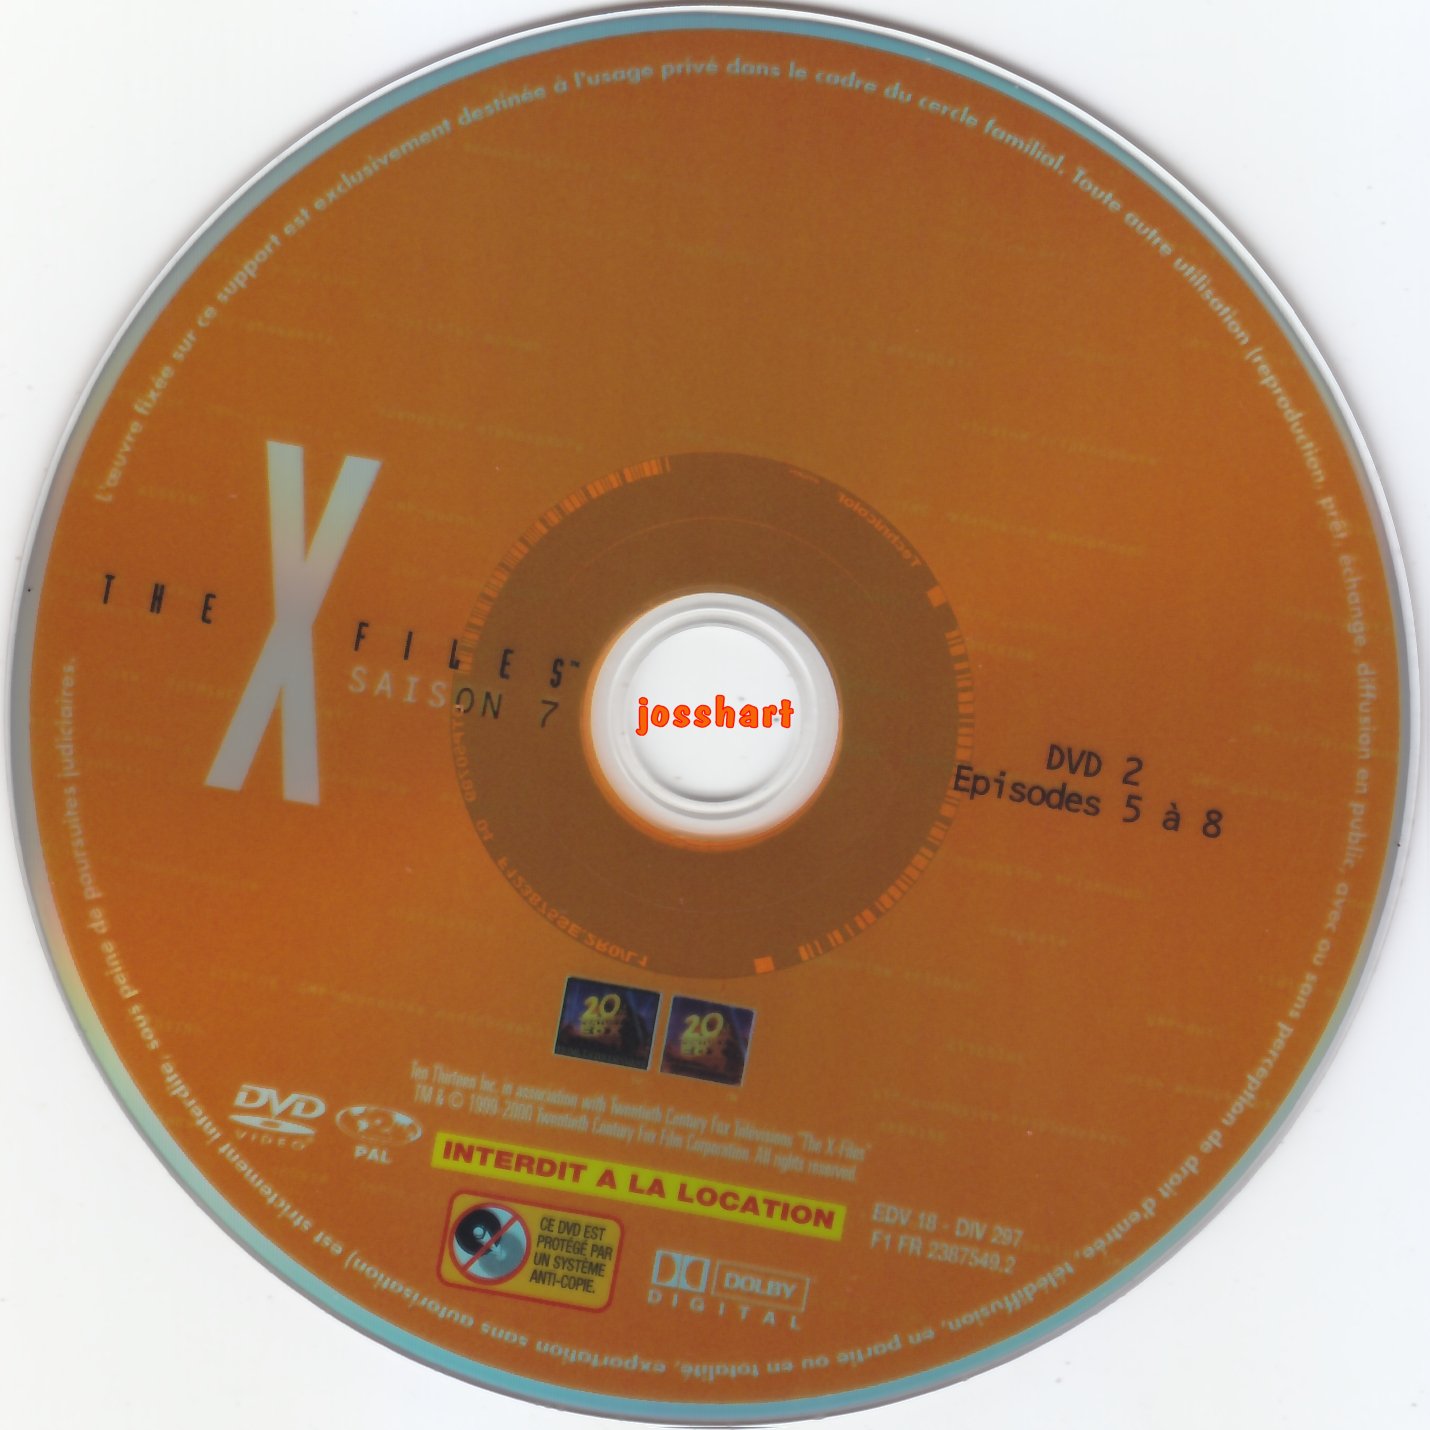 The X Files Saison 7 DVD 2 v2